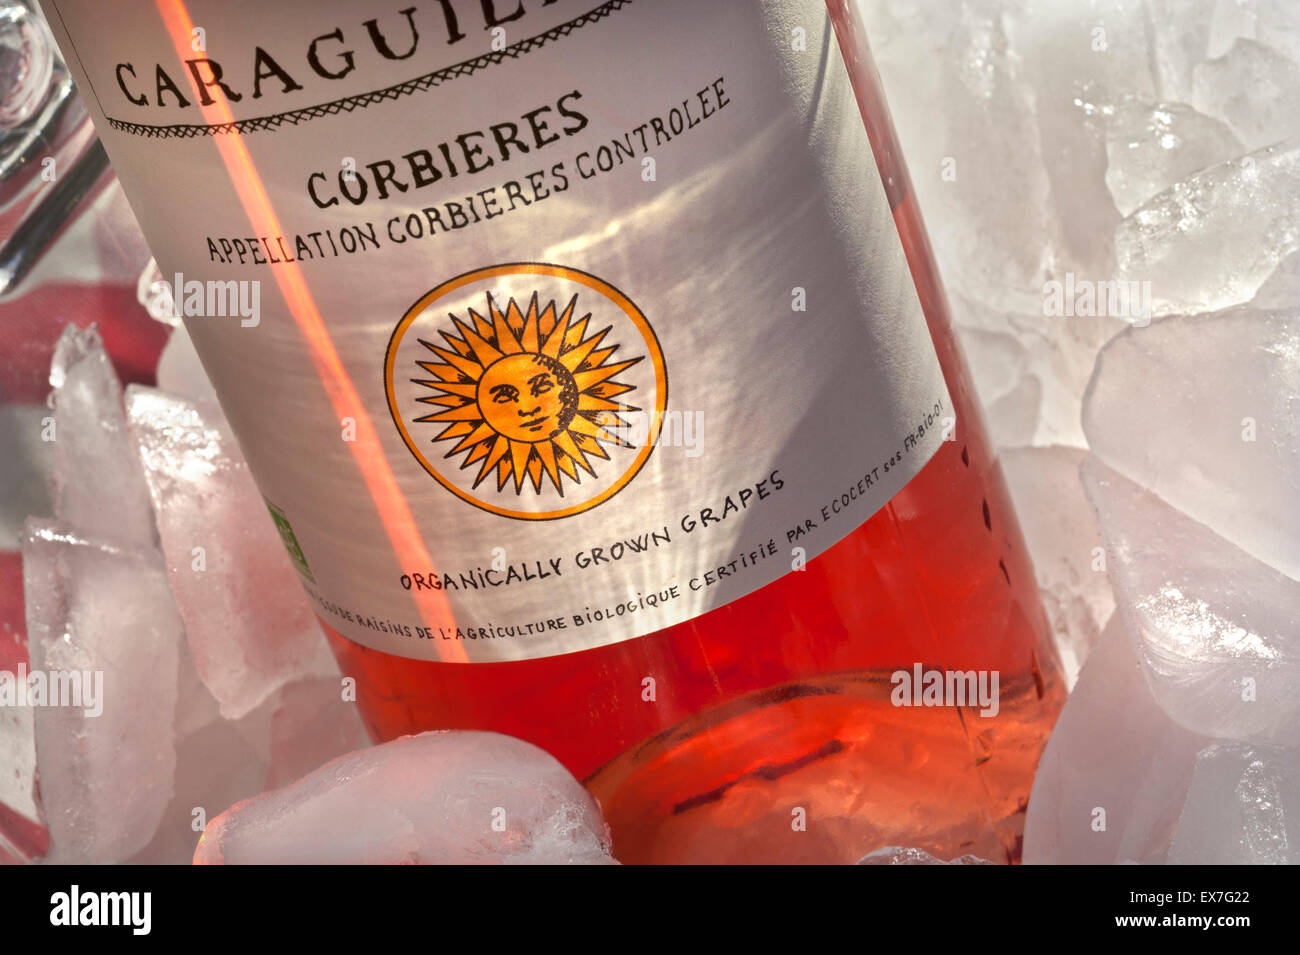 Flasche des Corbieres Chateau de Caraguilhes rose Wein mit biologisch angebauten Trauben Label in sonnendurchfluteten Weinkühler Natur Stockfoto